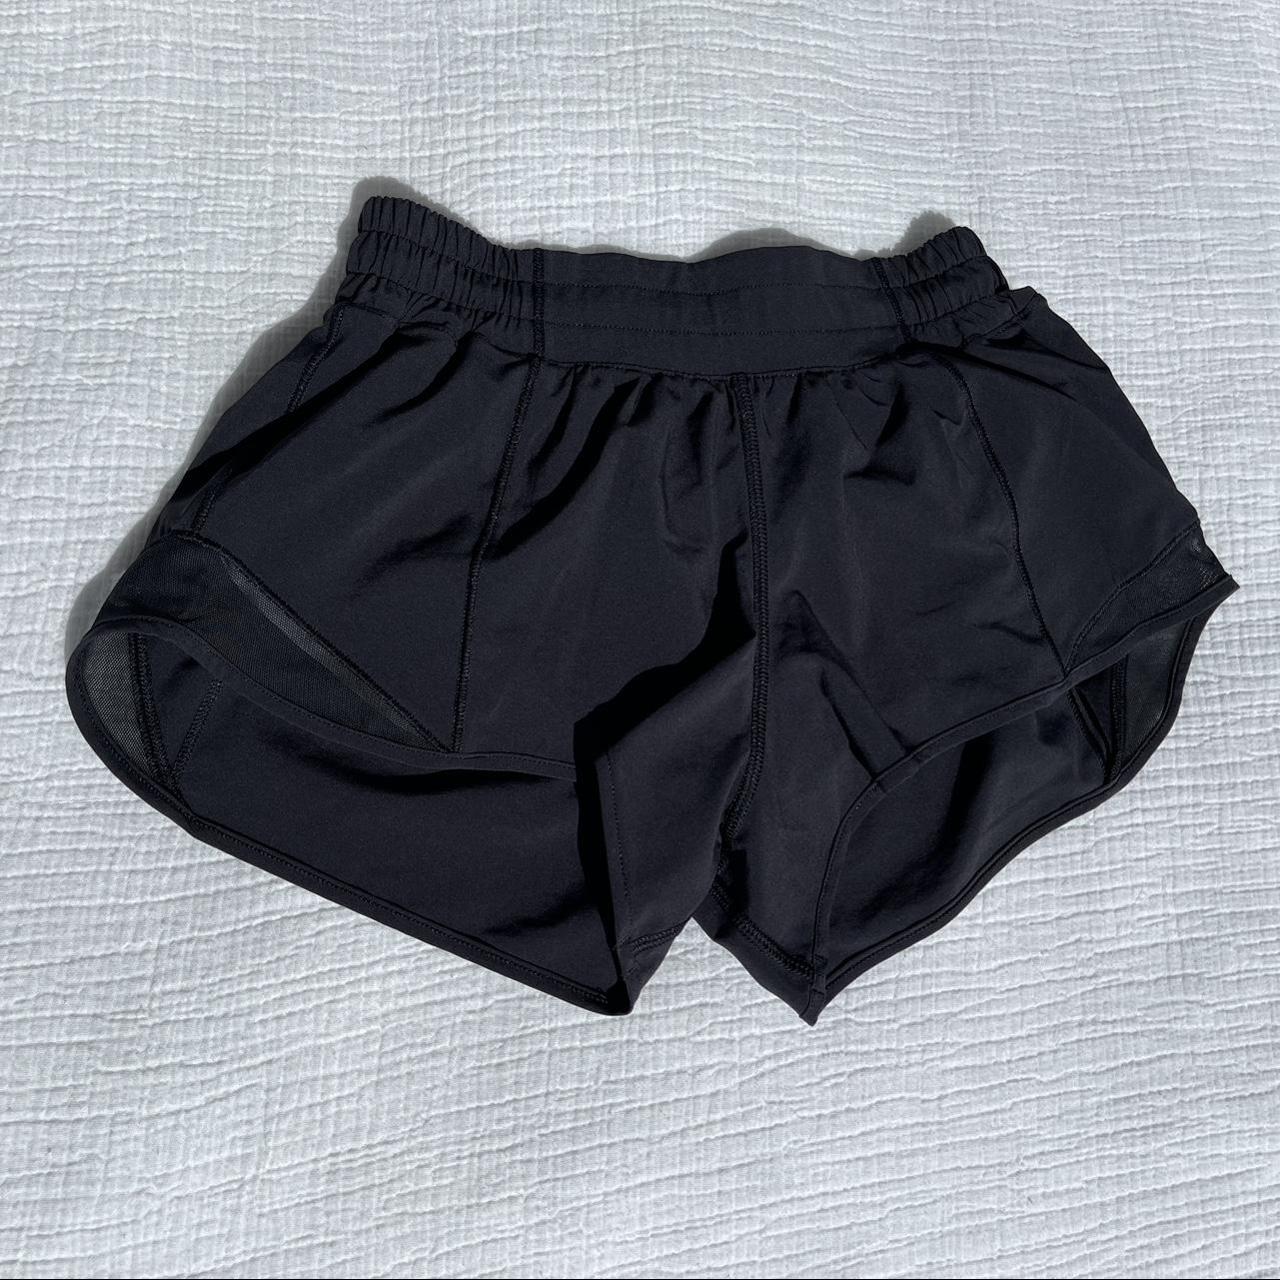 Lululemon hotty hot shorts Size 4 #lululemon... - Depop